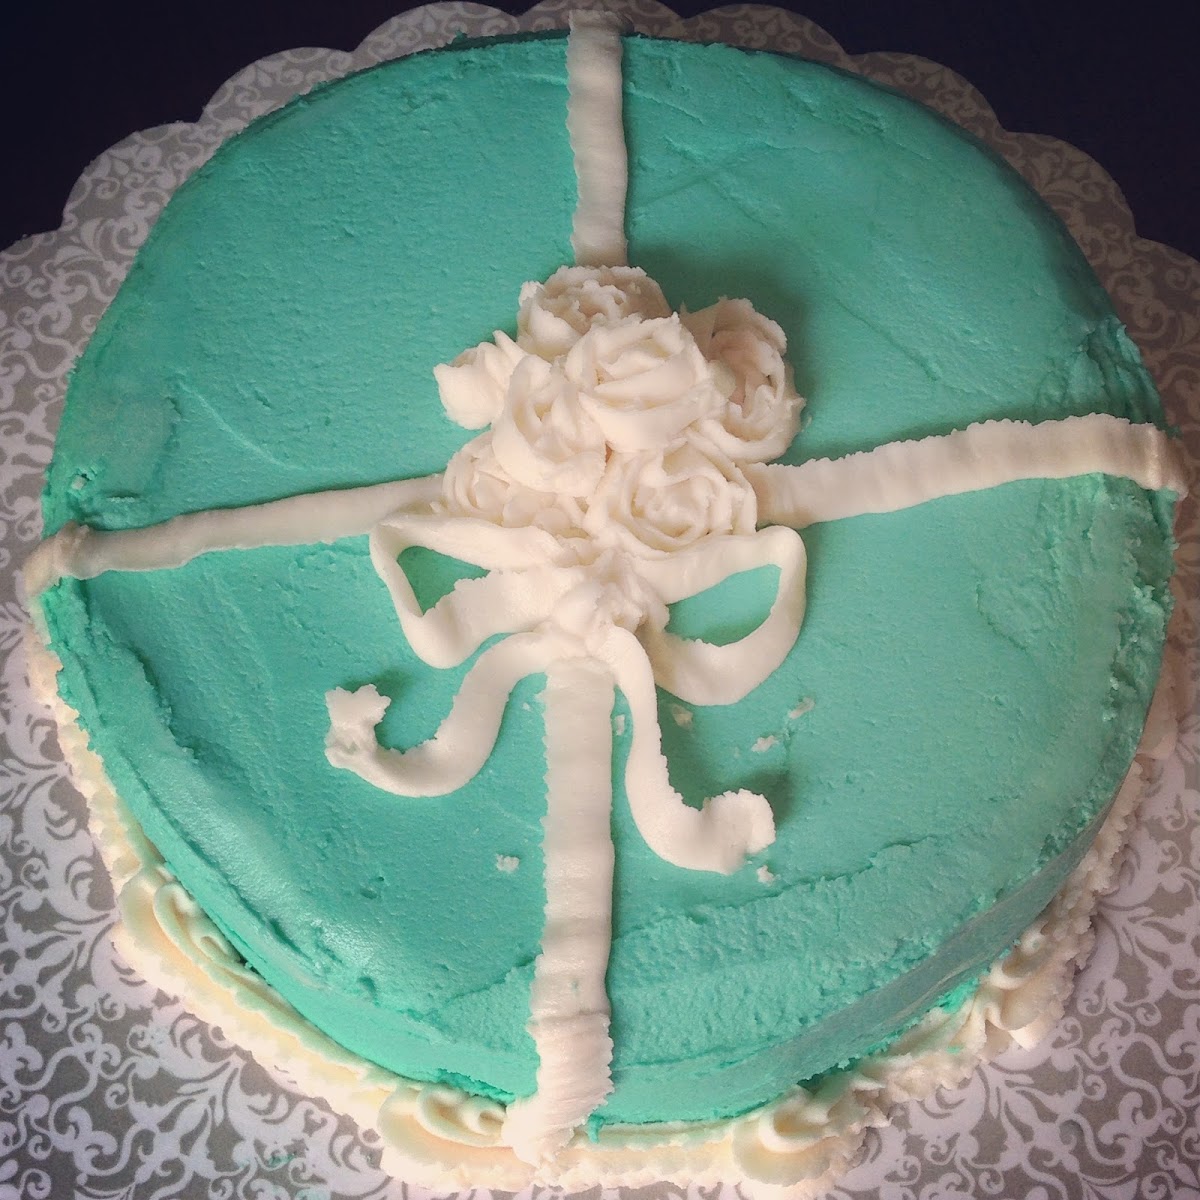 Tiffany's themed cake